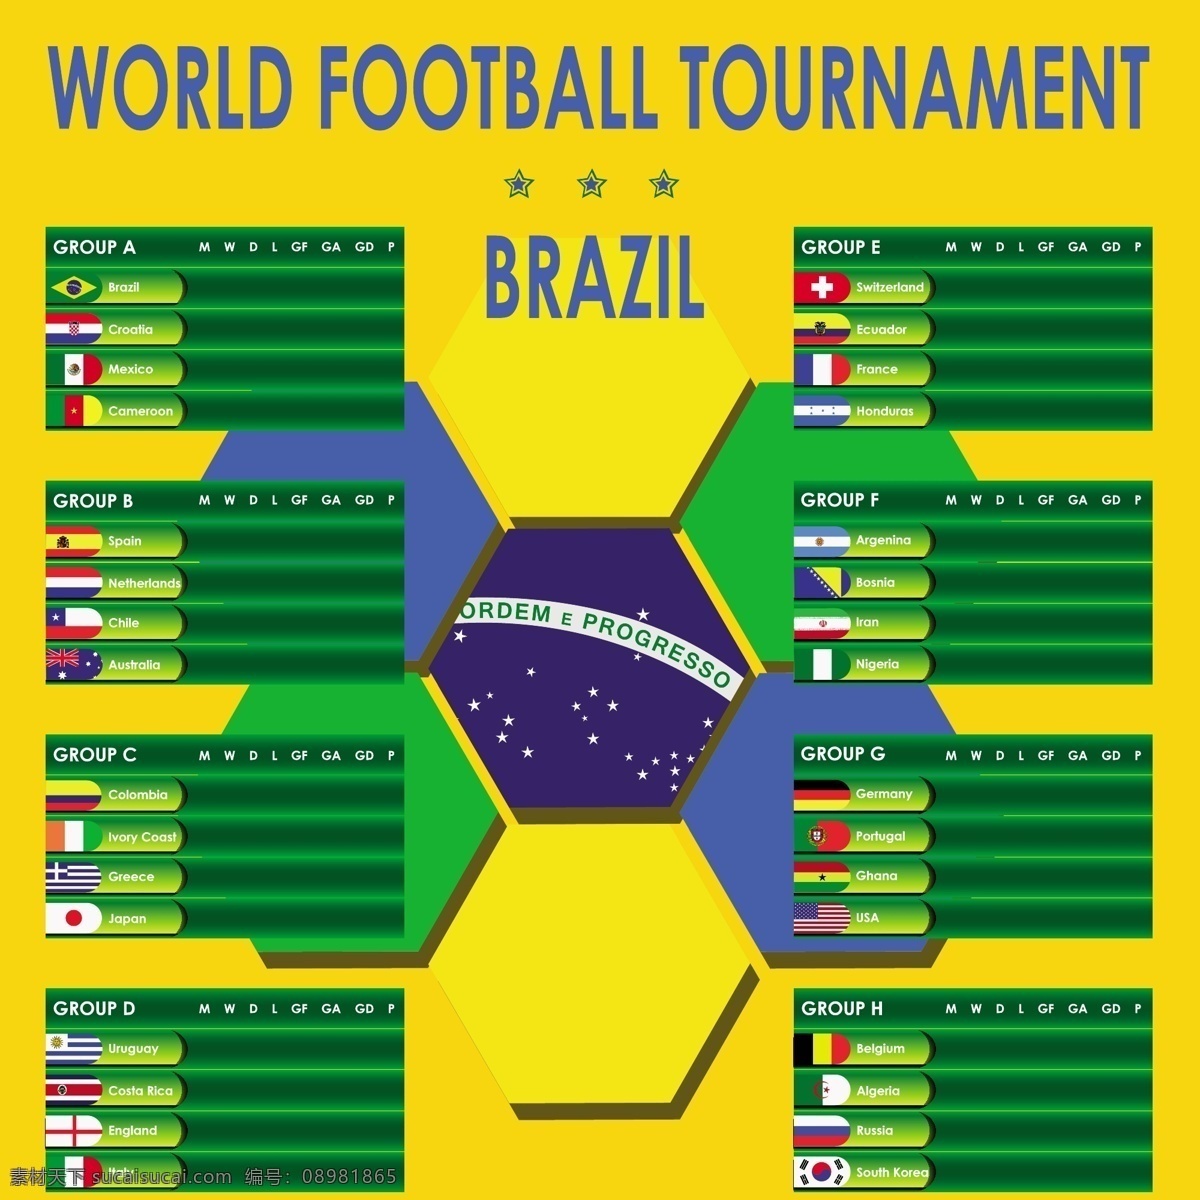 世界各国国旗 世界各国 国旗 模板下载 国旗图案 足球国家 体育运动 各国 旗帜 标志 生活百科 矢量素材 黄色